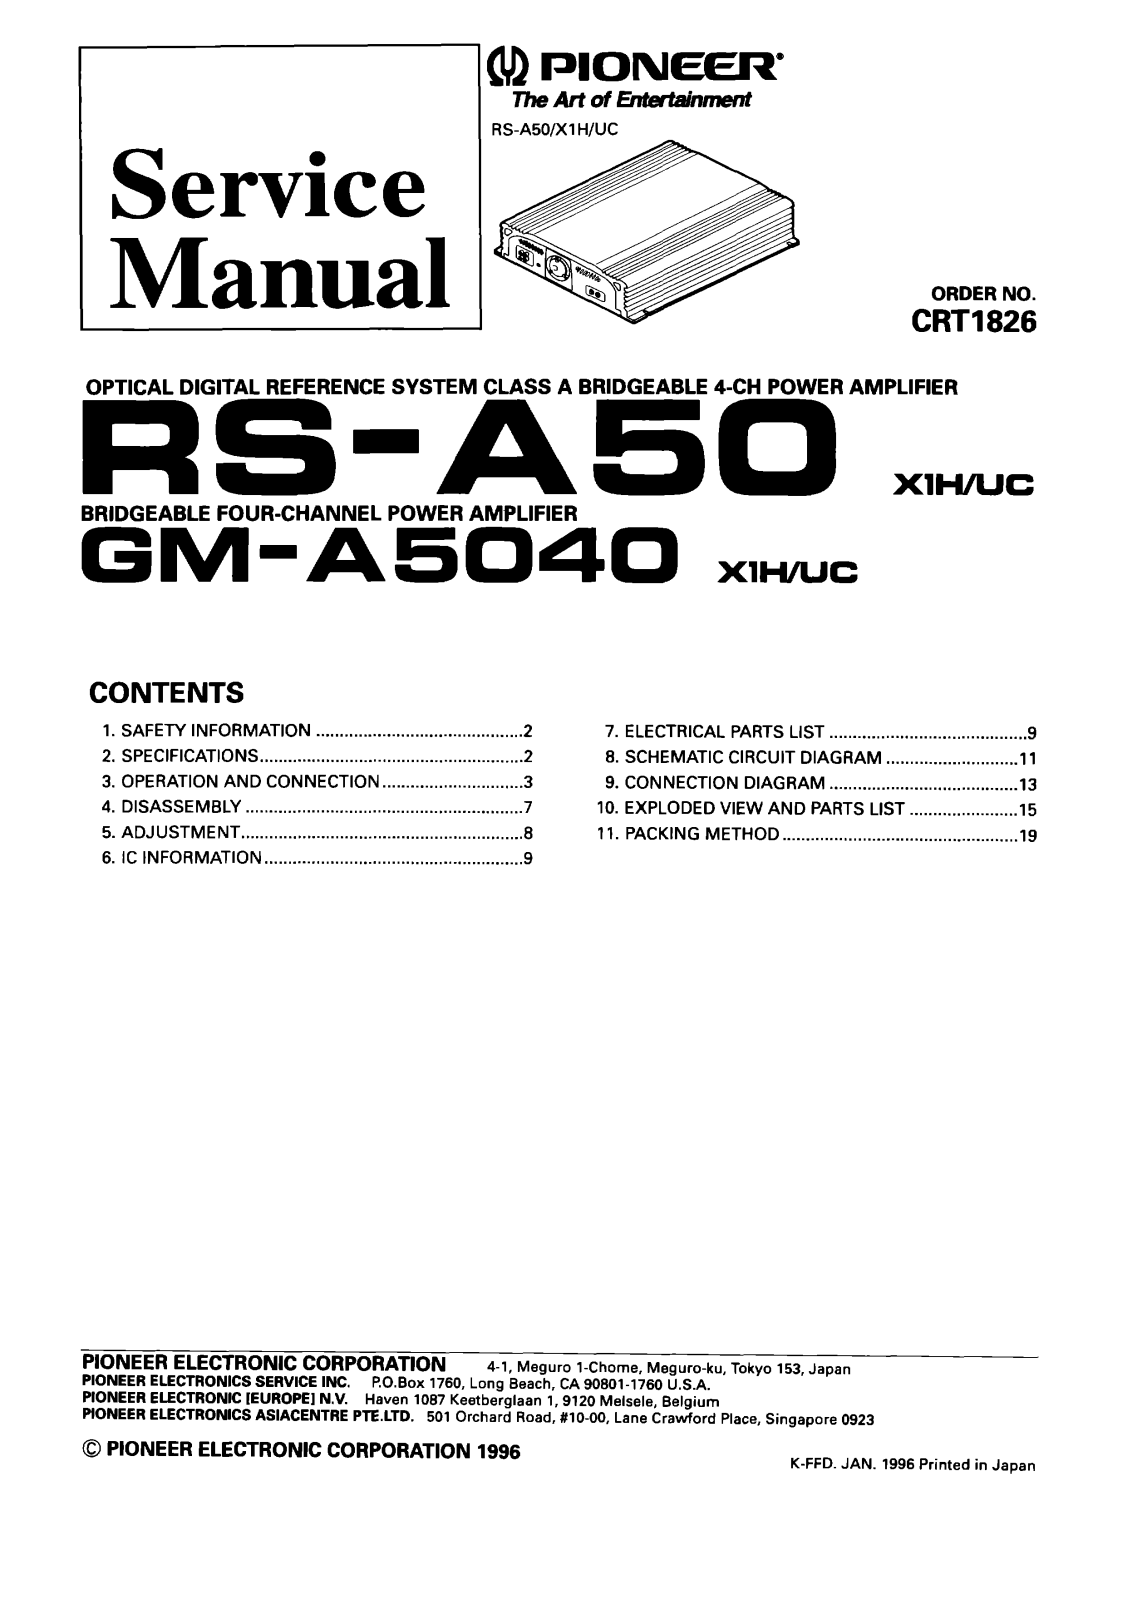 PIONEER RS-A50 X1H/UC, GM-A5040 X1H/UC Service Manual